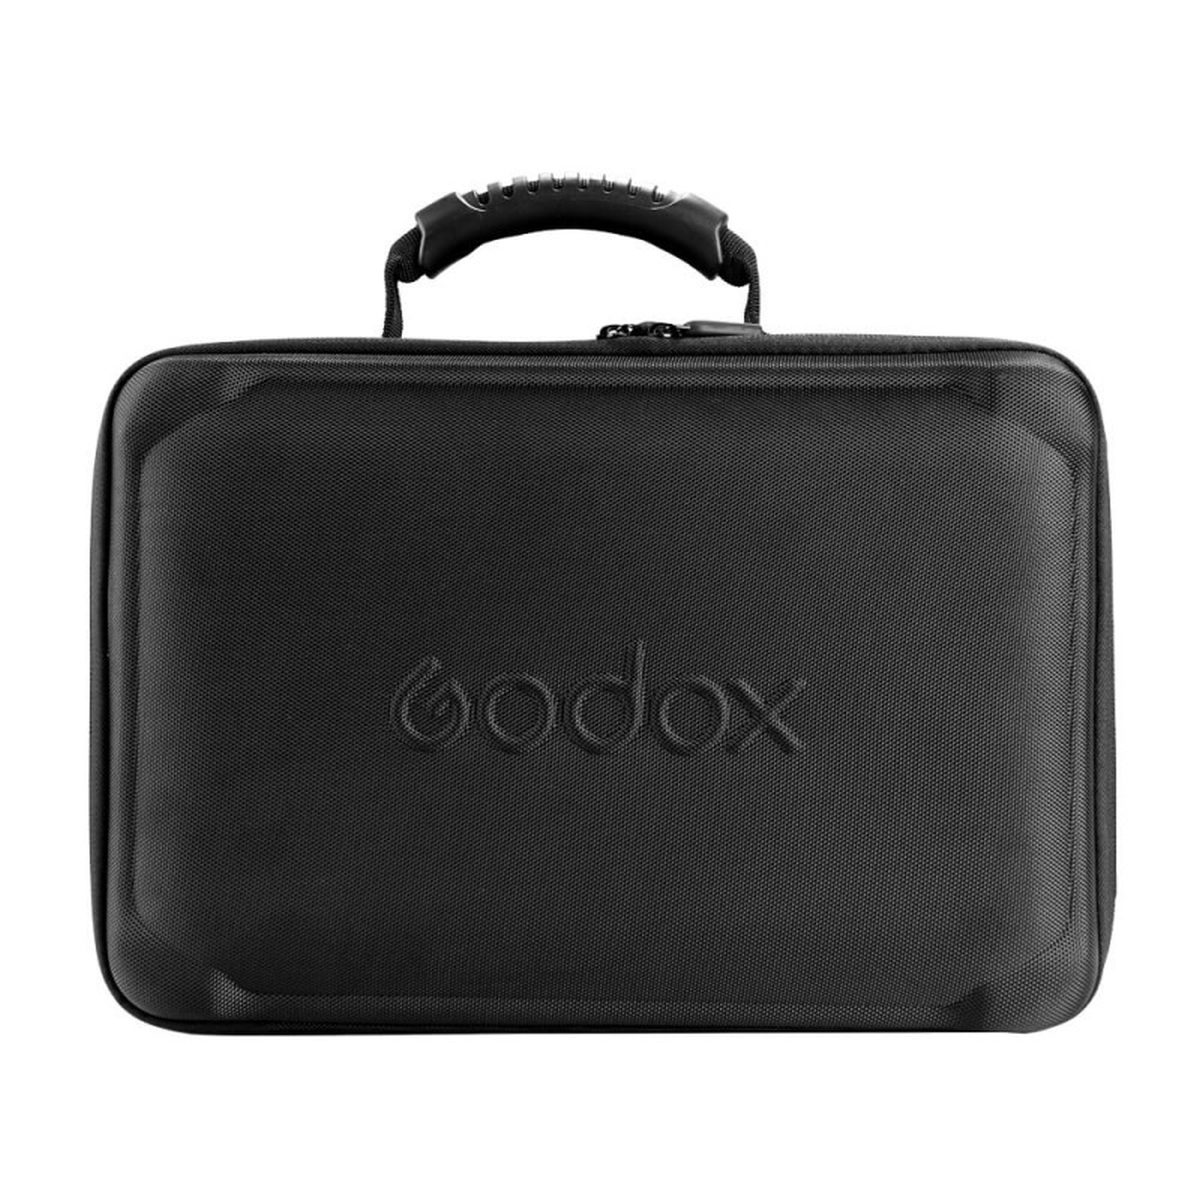 Godox AD 400 Pro TTL Blitz